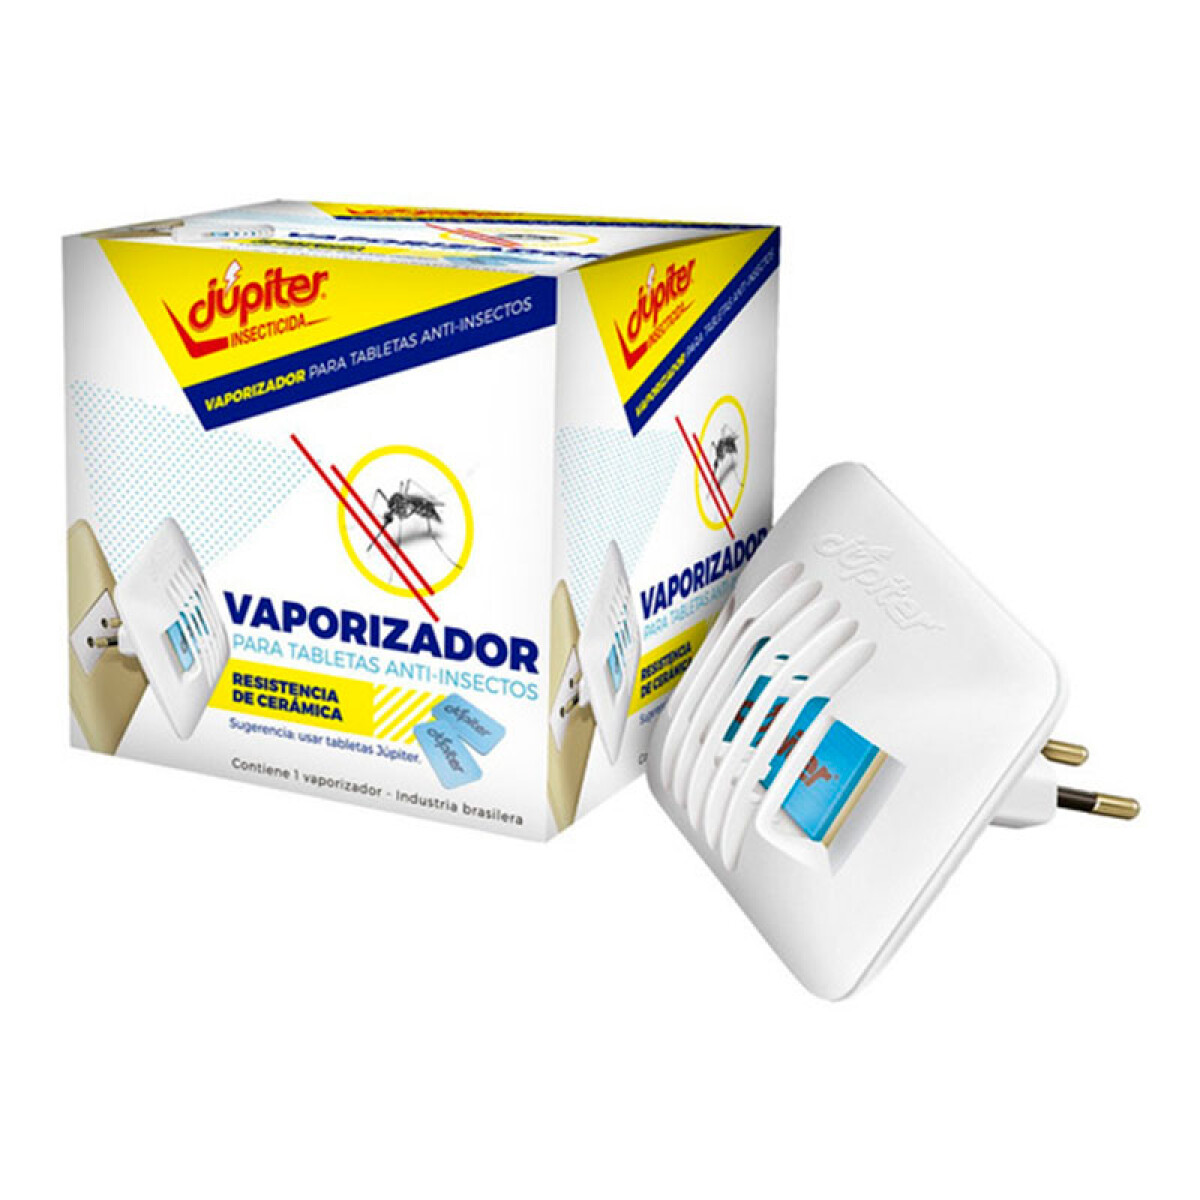 Vaporizador JUPITER para Tabletas Anti Mosquitos 